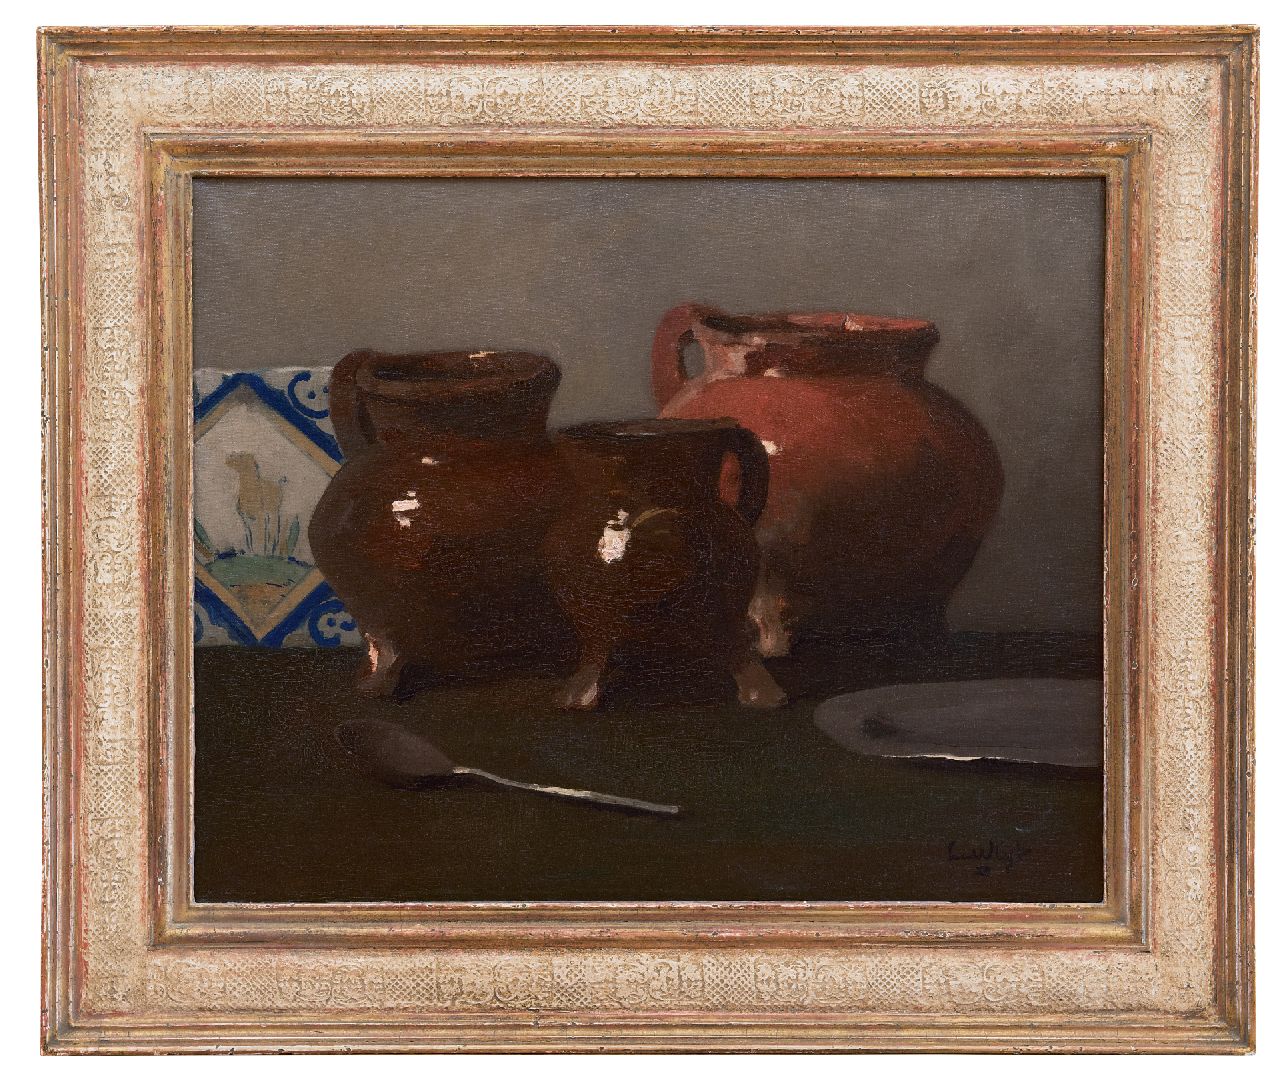 Vlist L. van der | Leendert van der Vlist | Paintings offered for sale | Still life with lead glaze jars, oil on canvas 40.2 x 50.2 cm, signed l.r.